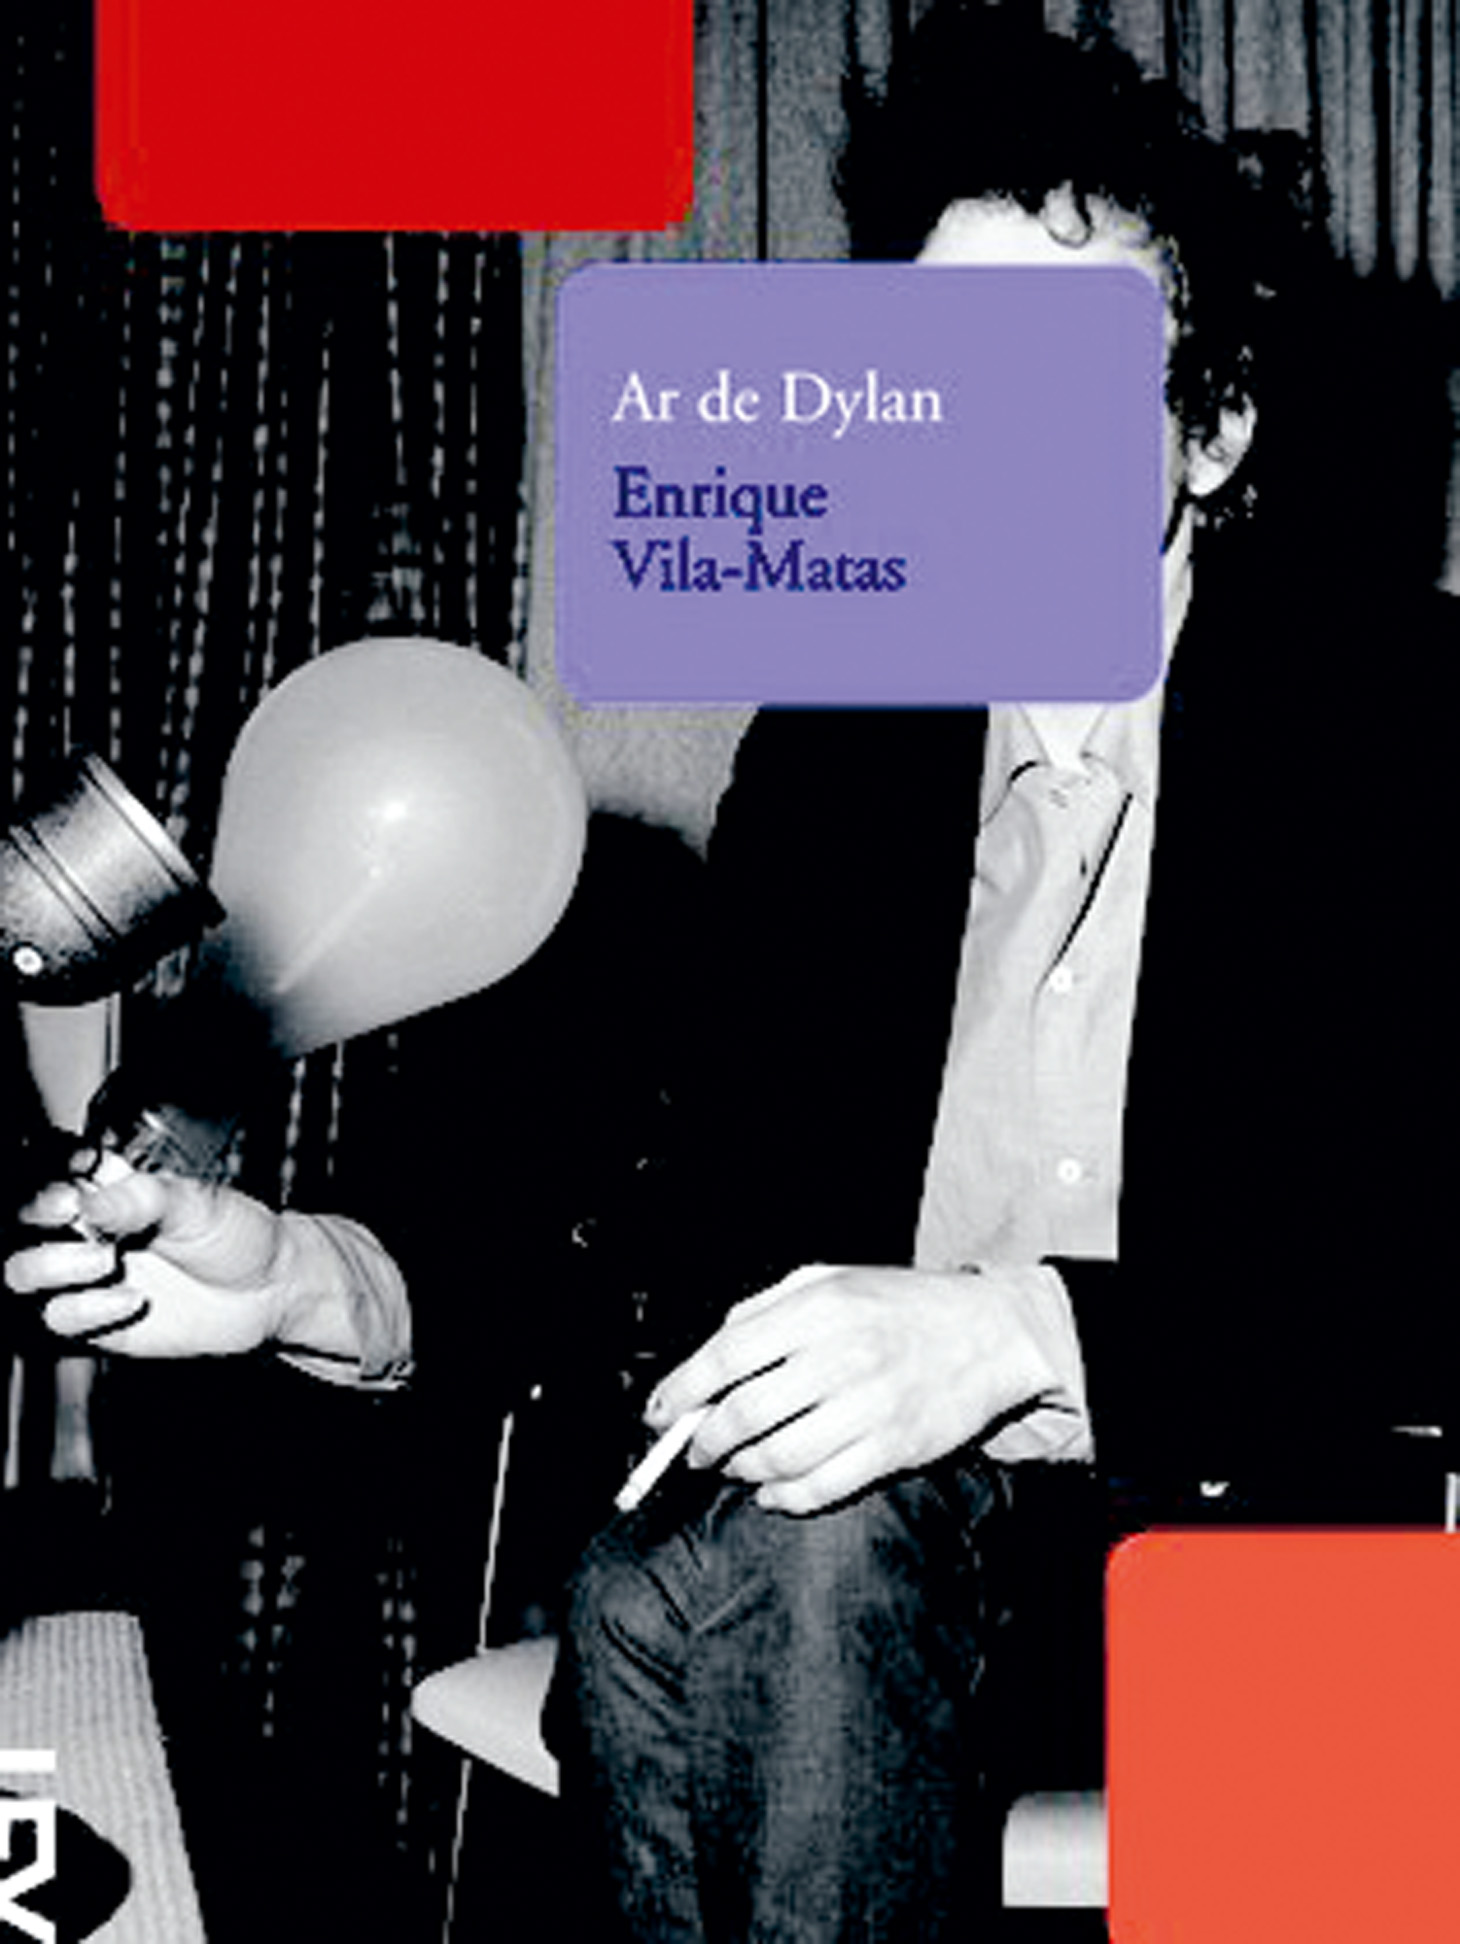 Livros - Ar de Dylan: Novela de Enrique Vila-Matas sobre um cineasta, clone de Bob Dylan, assombrado pelas memórias do pai. (Guilherme Werneck, MTV)